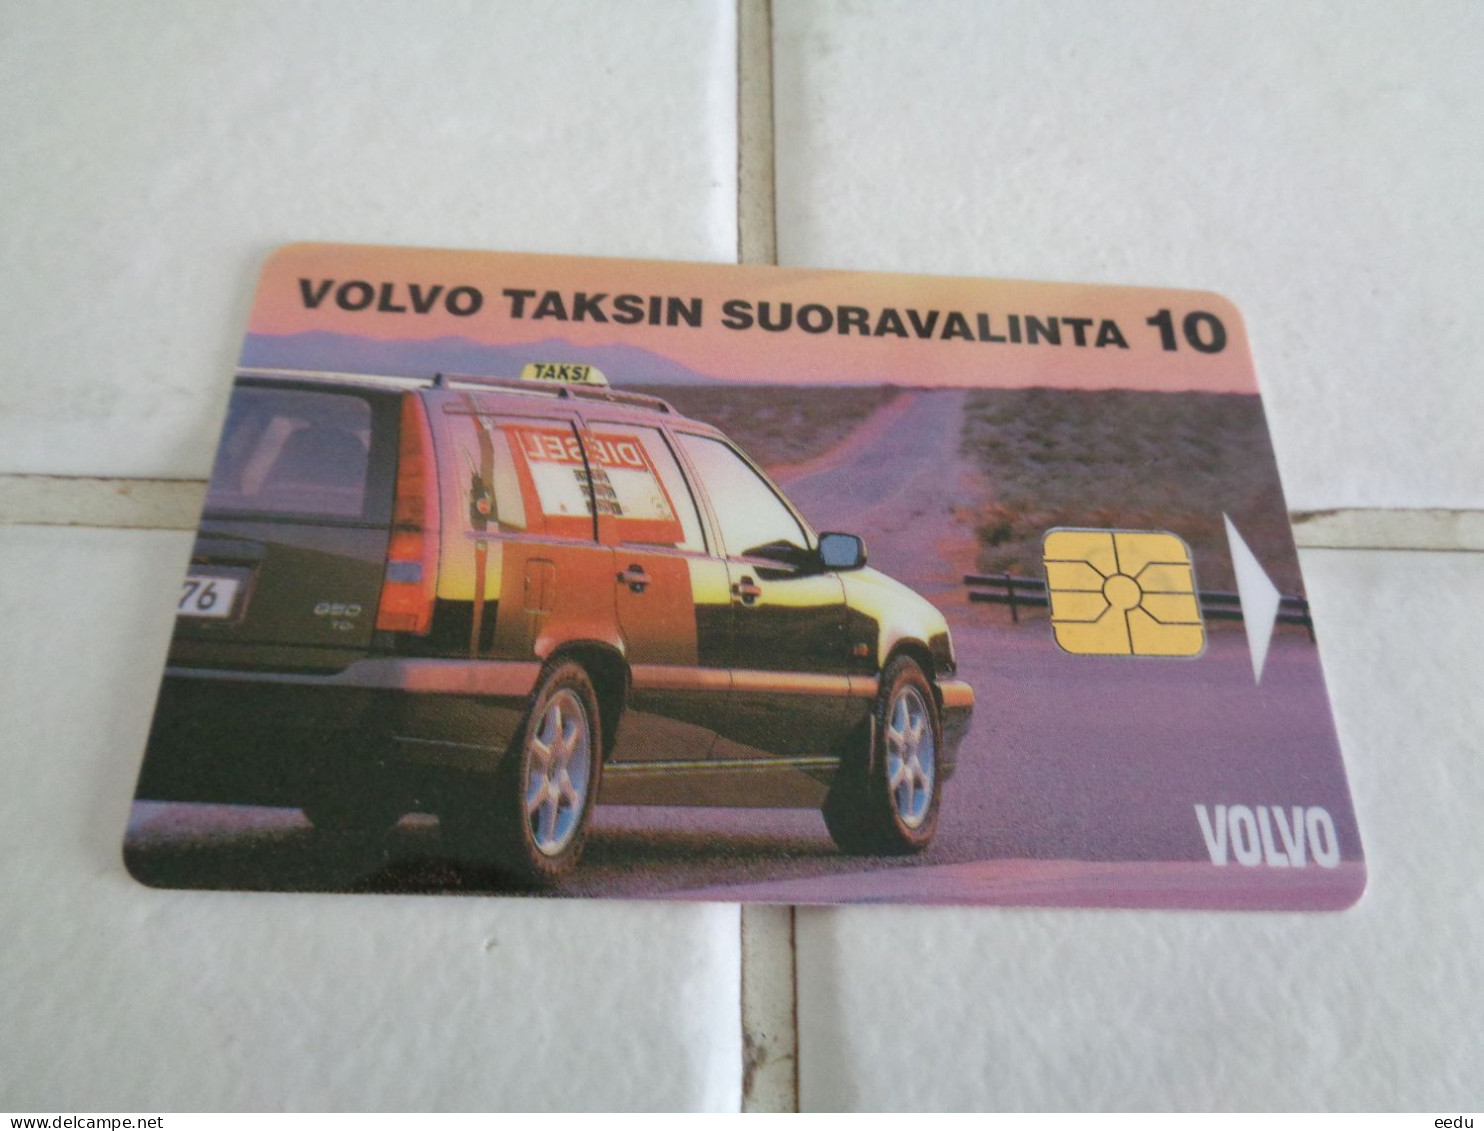 Finland Phonecard Tele Y1 - Finlandia